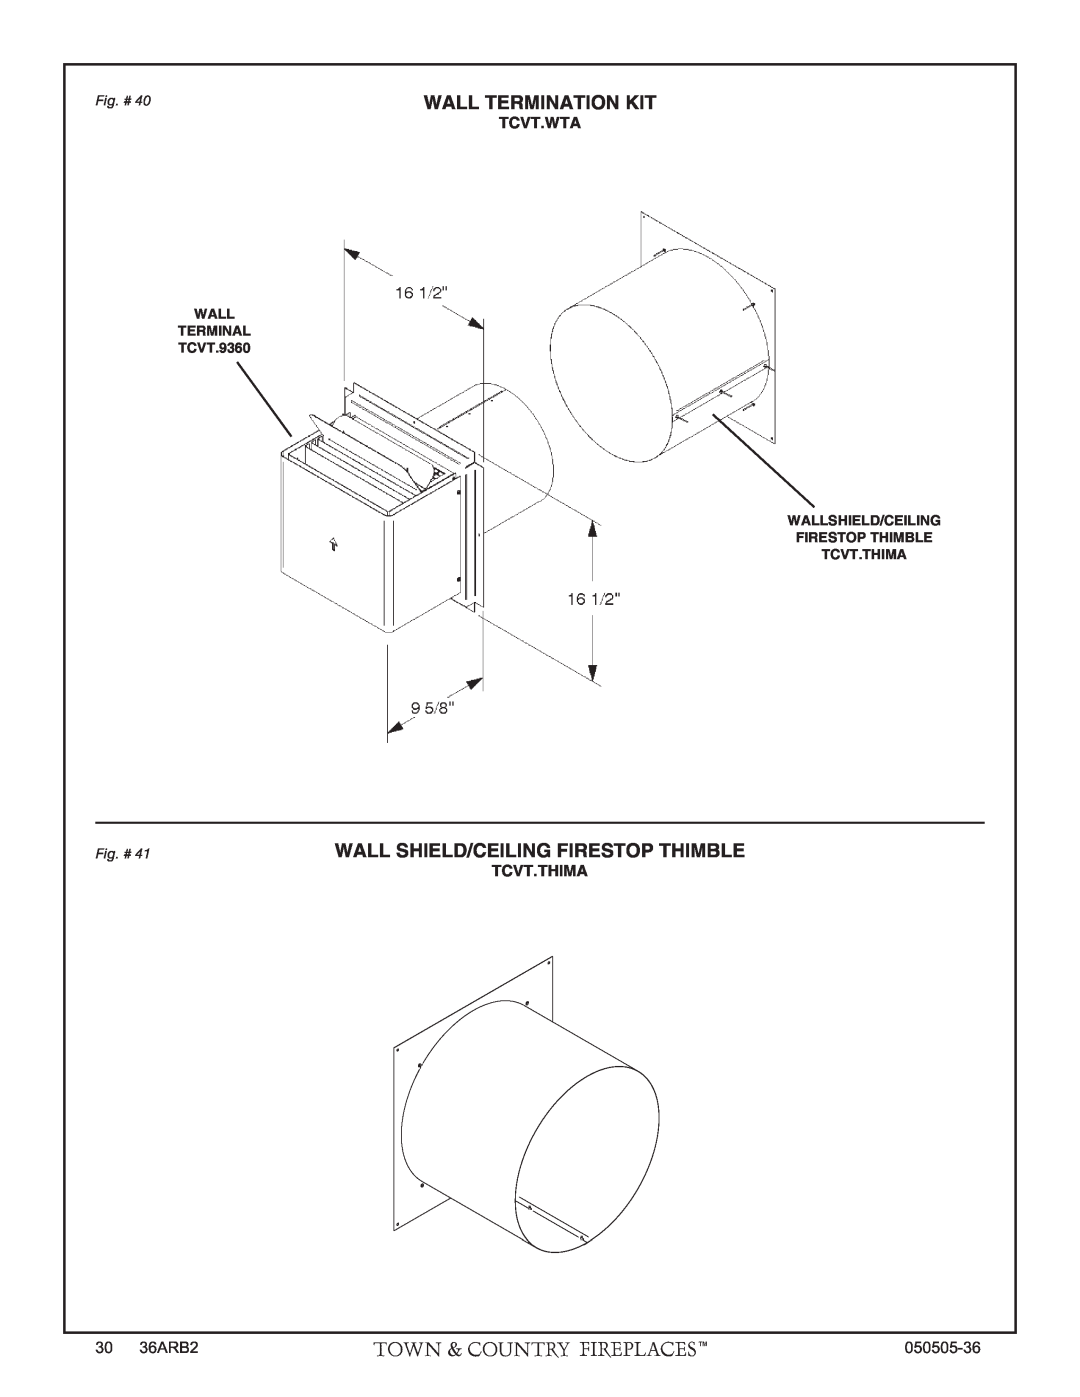 PGS TC36 AR manual Wall Termination Kit, Wall Shield/Ceiling Firestop Thimble, Tcvt.Wta, Tcvt.Thima, Fig. # 